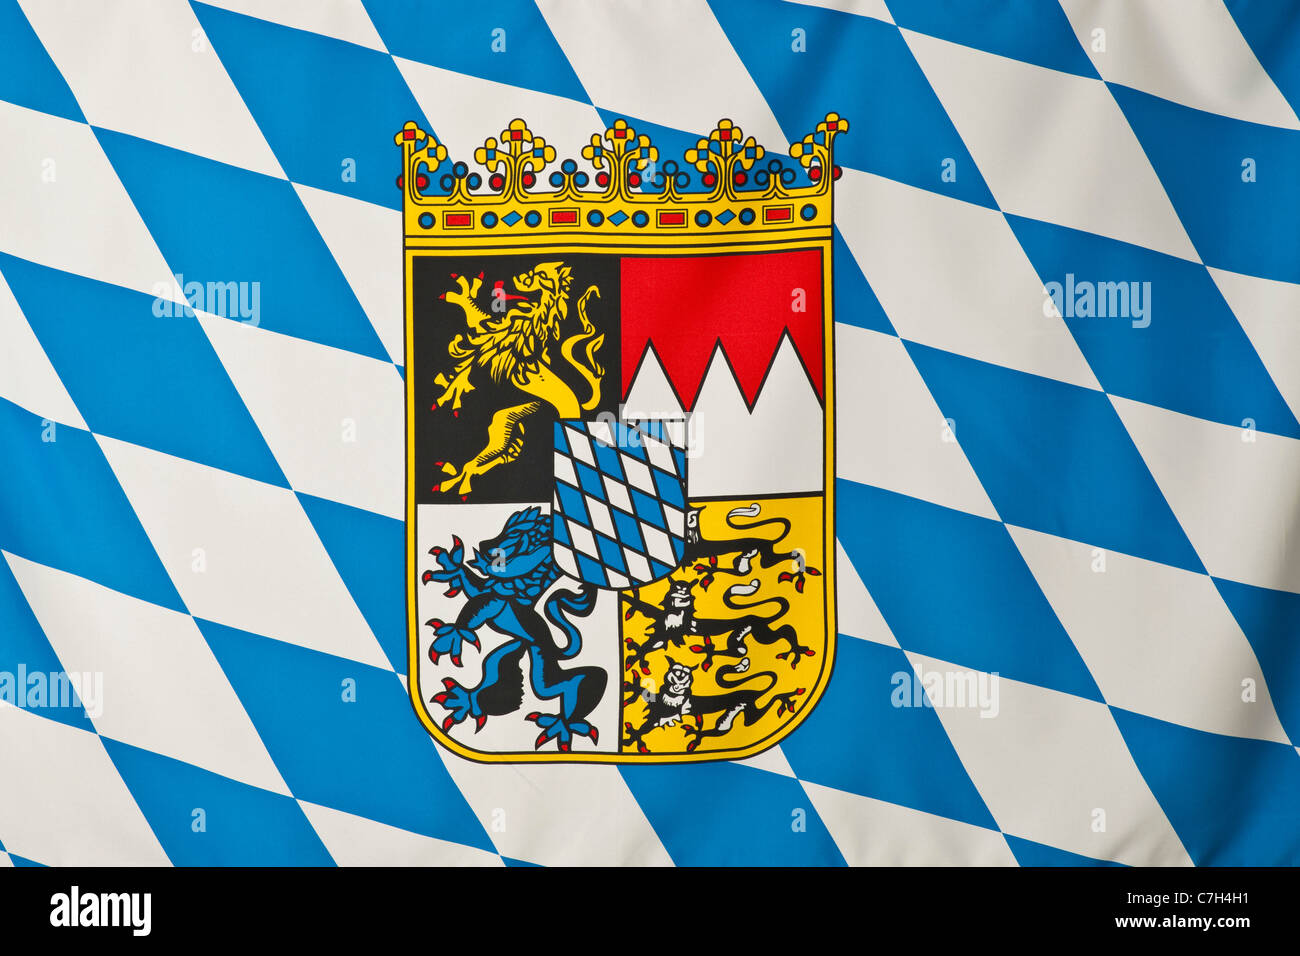 Herunterladen hintergrundbild flagge bayern, land deutschland